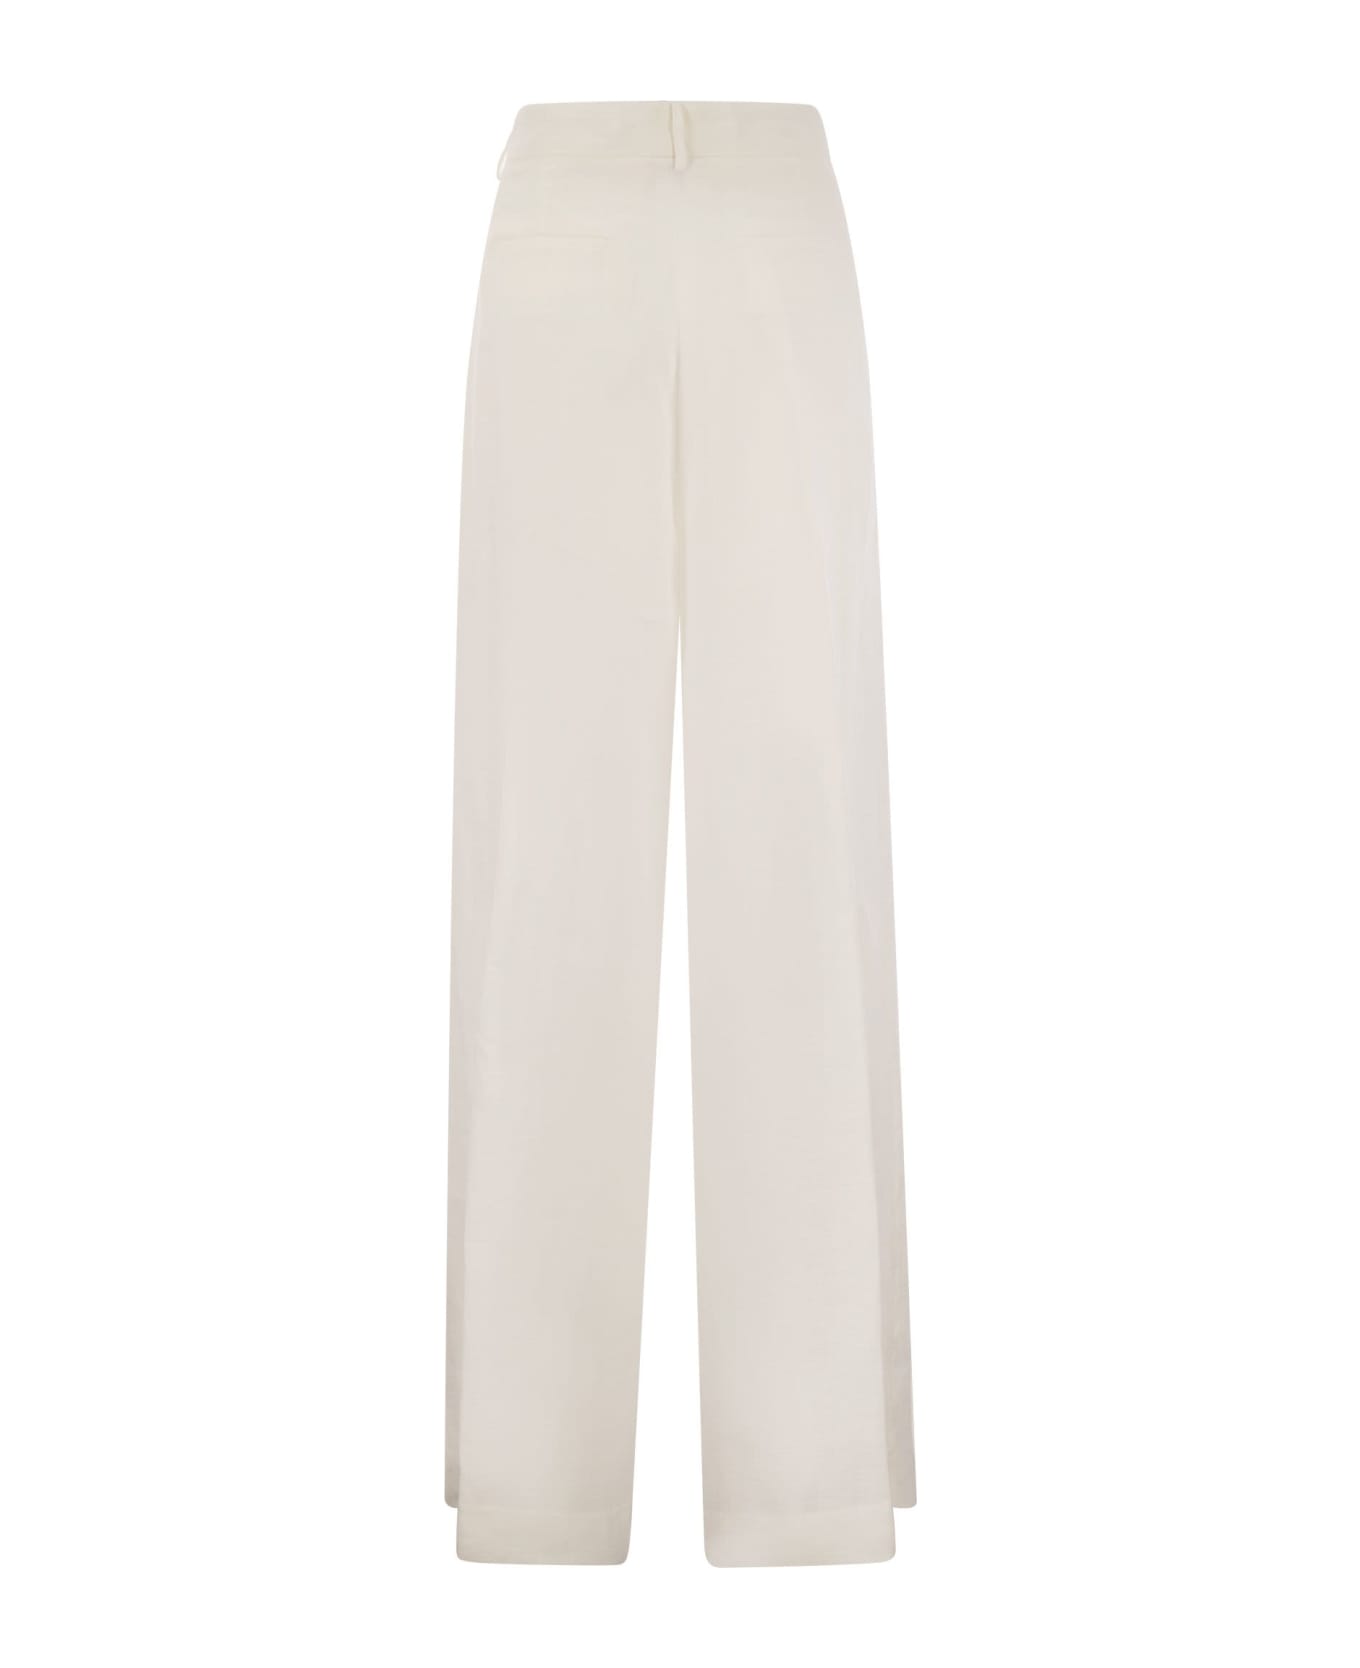 Antonelli Tulipano - Linen Wide Trousers - White